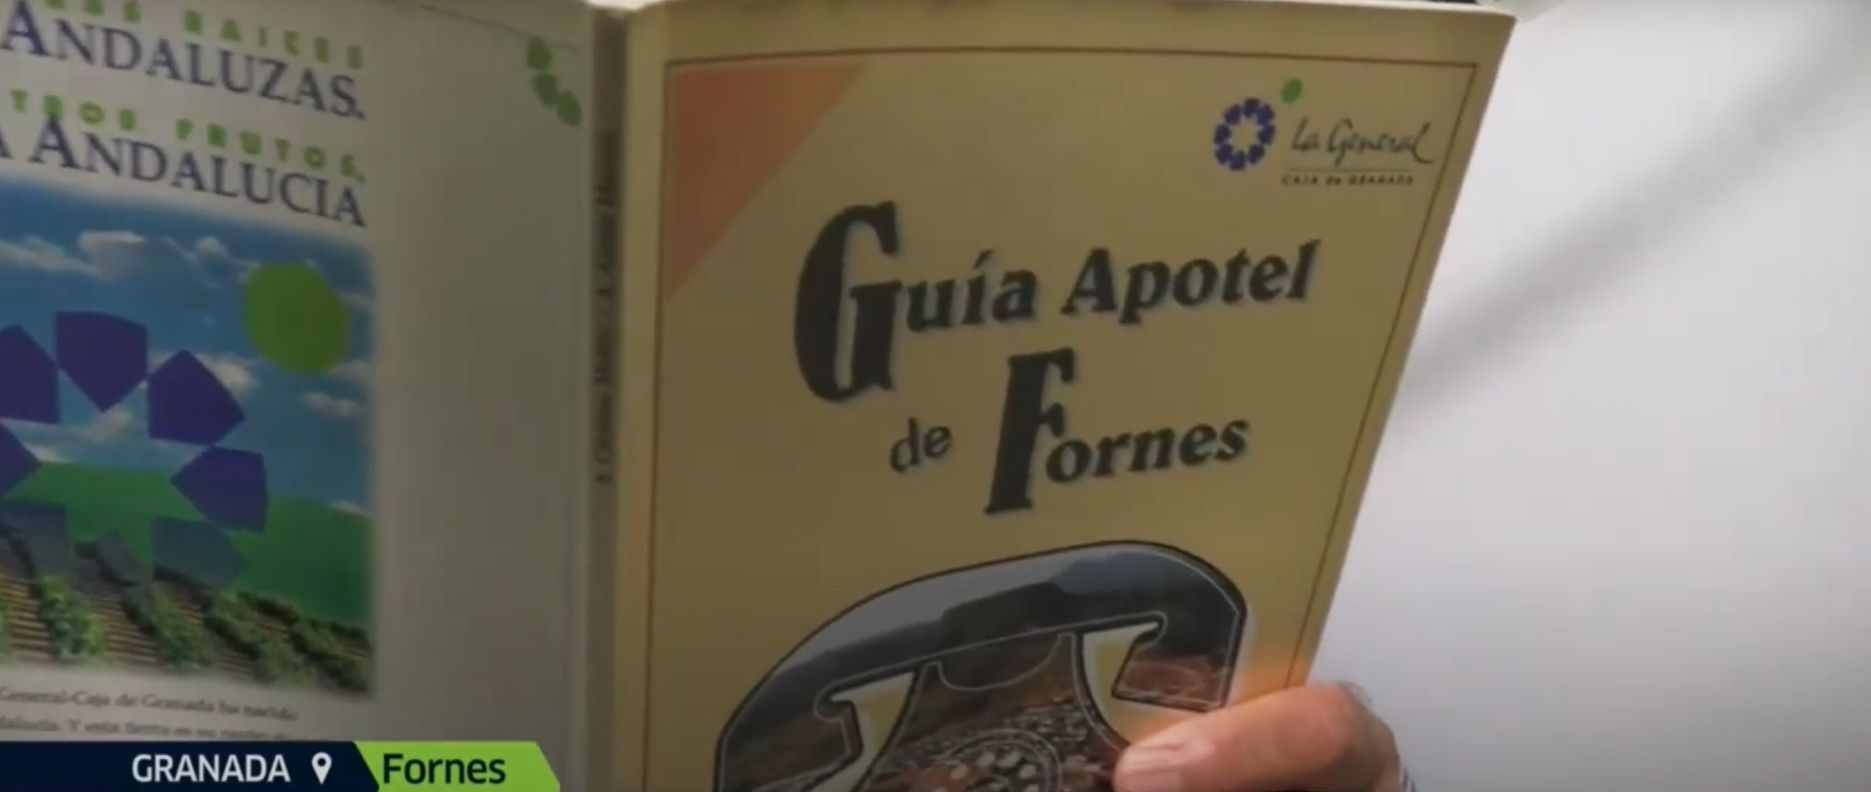 El pueblo de Granada que tiene una guía telefónica con los motes de sus vecinos